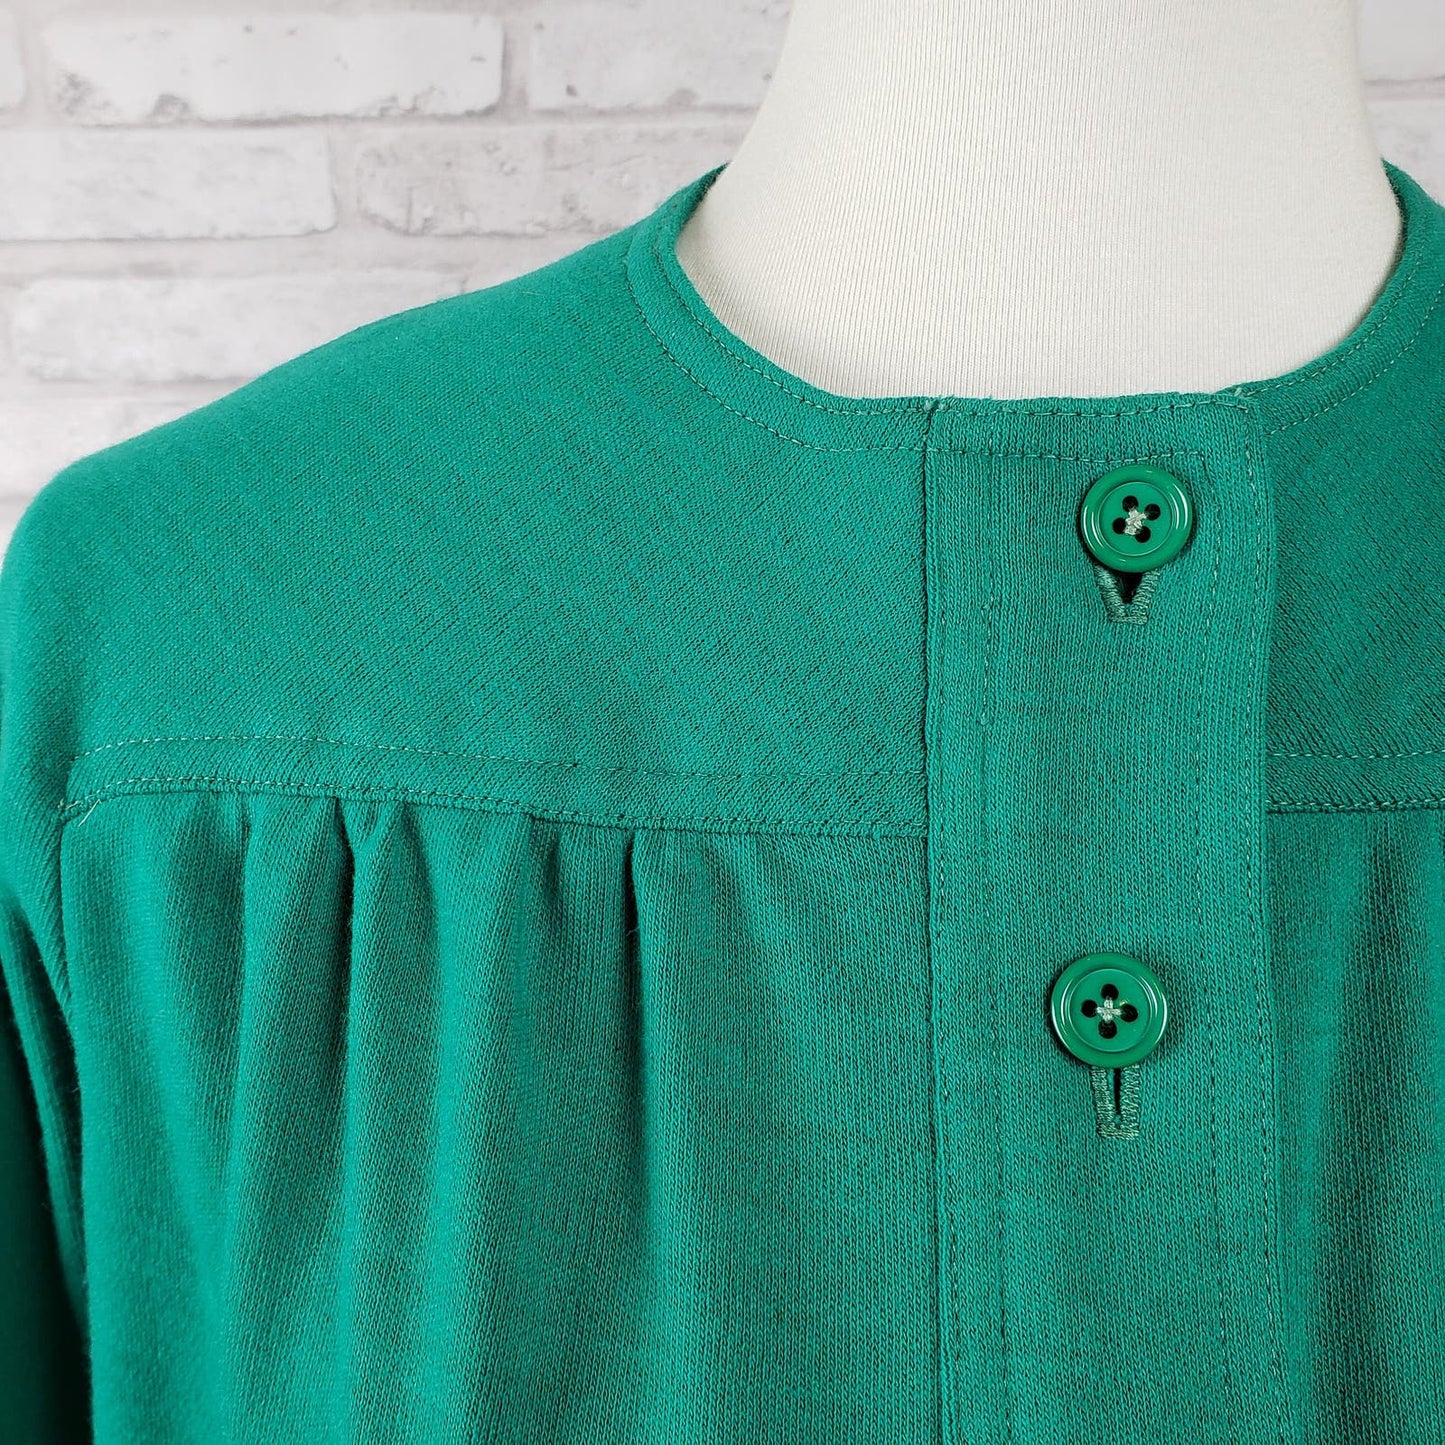 Swing jacket or shacket emerald green wool blend jersey knit, 38-inch bust Joan Leslie for Kasper 1970s